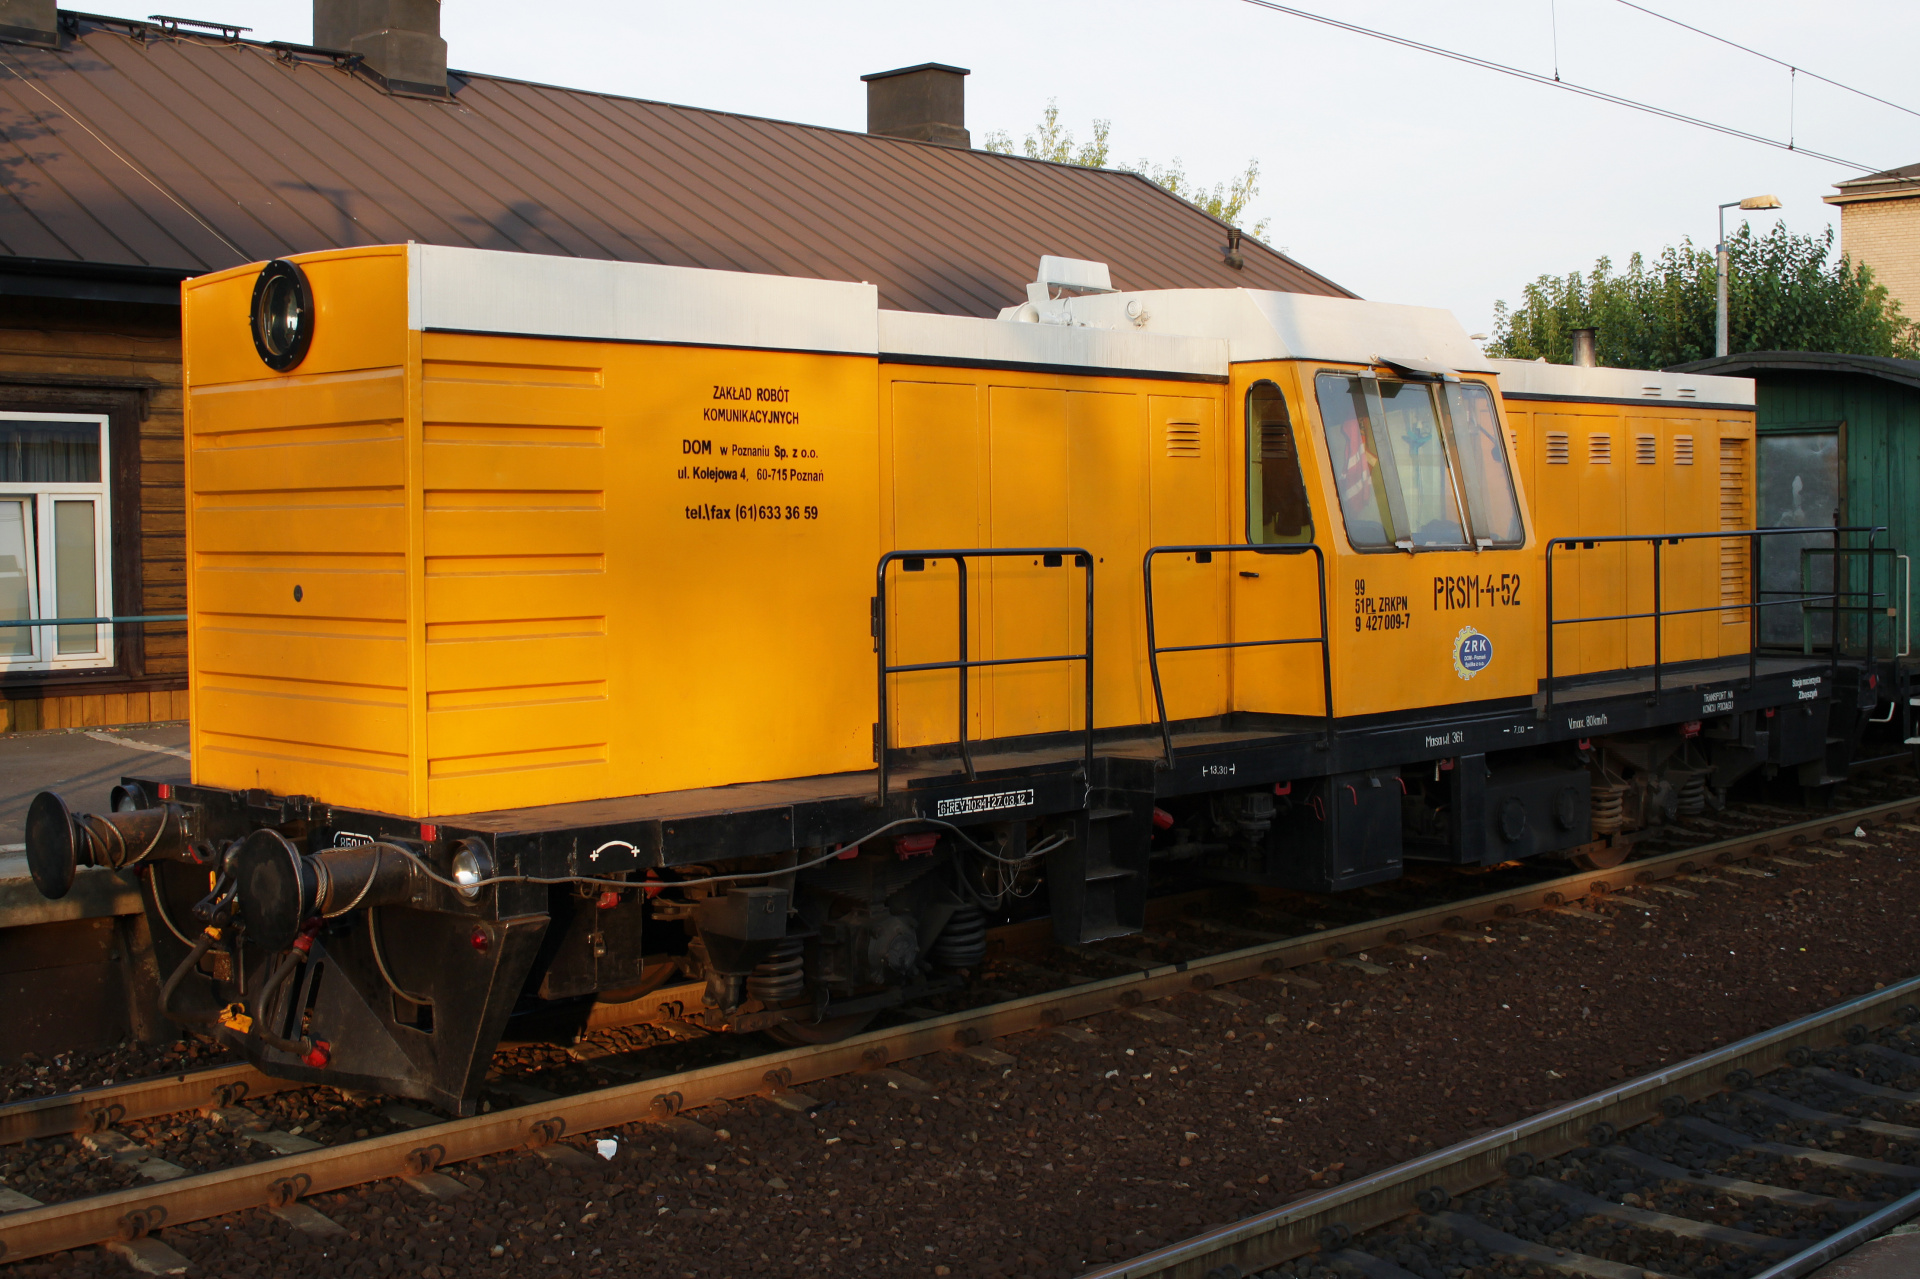 PRSM-4-52 (Pojazdy » Pociągi i lokomotywy » Techniczne)